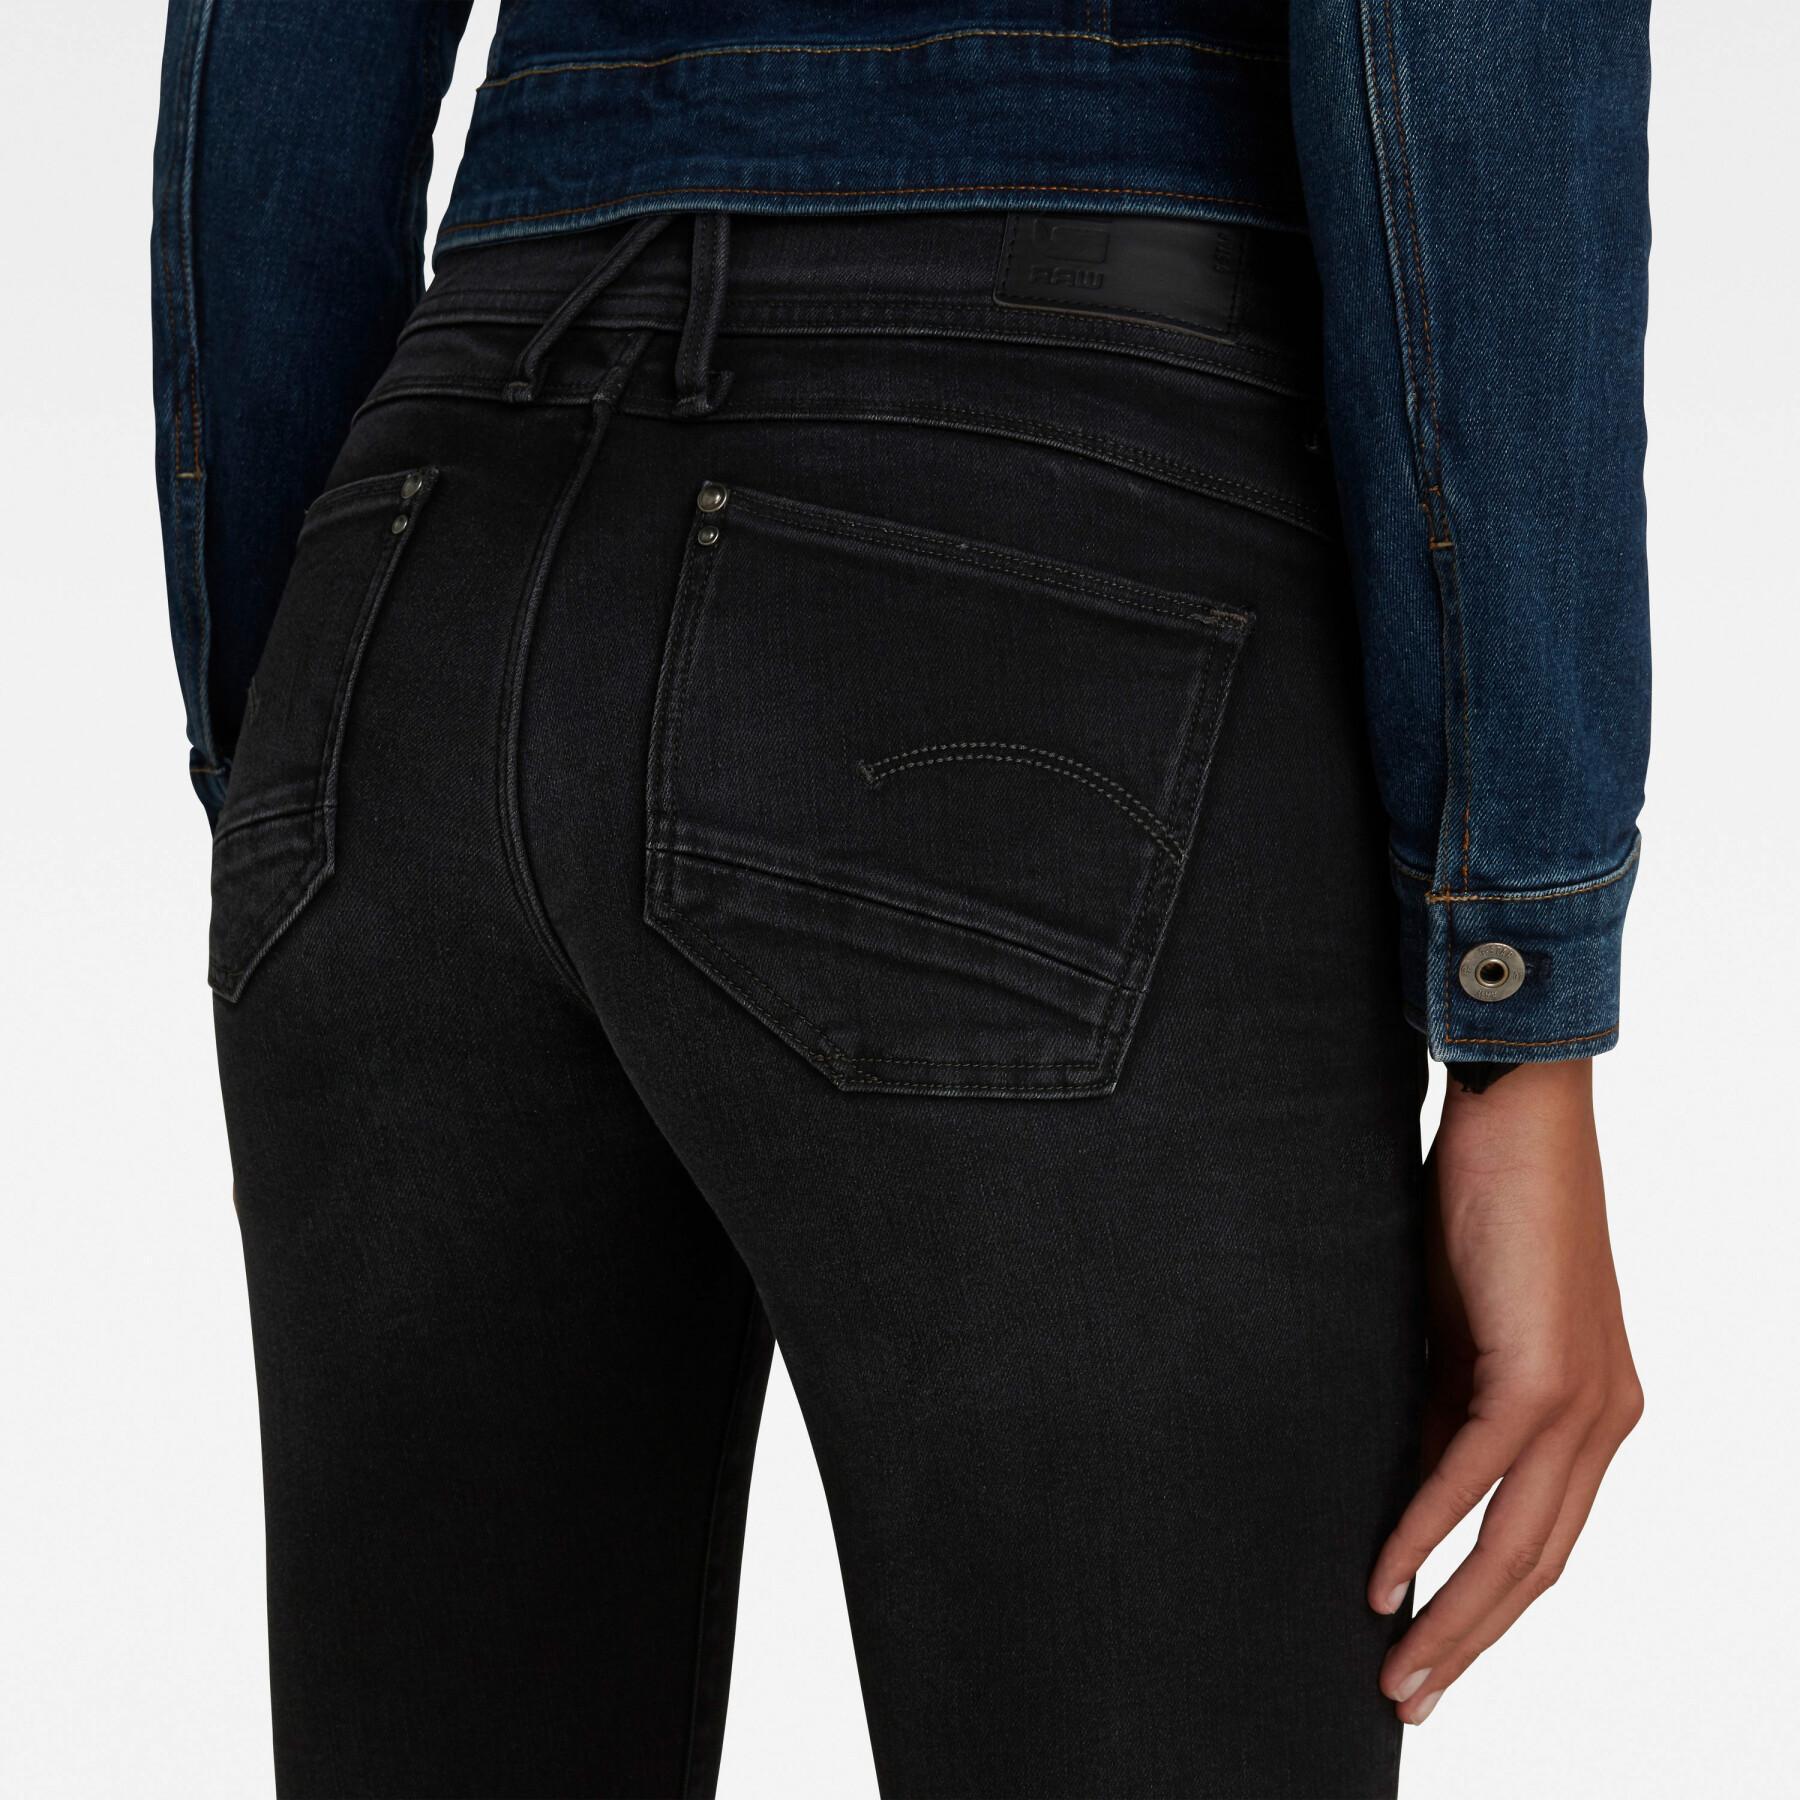 Skinny jeans för kvinnor G-Star Lynn Mid Super